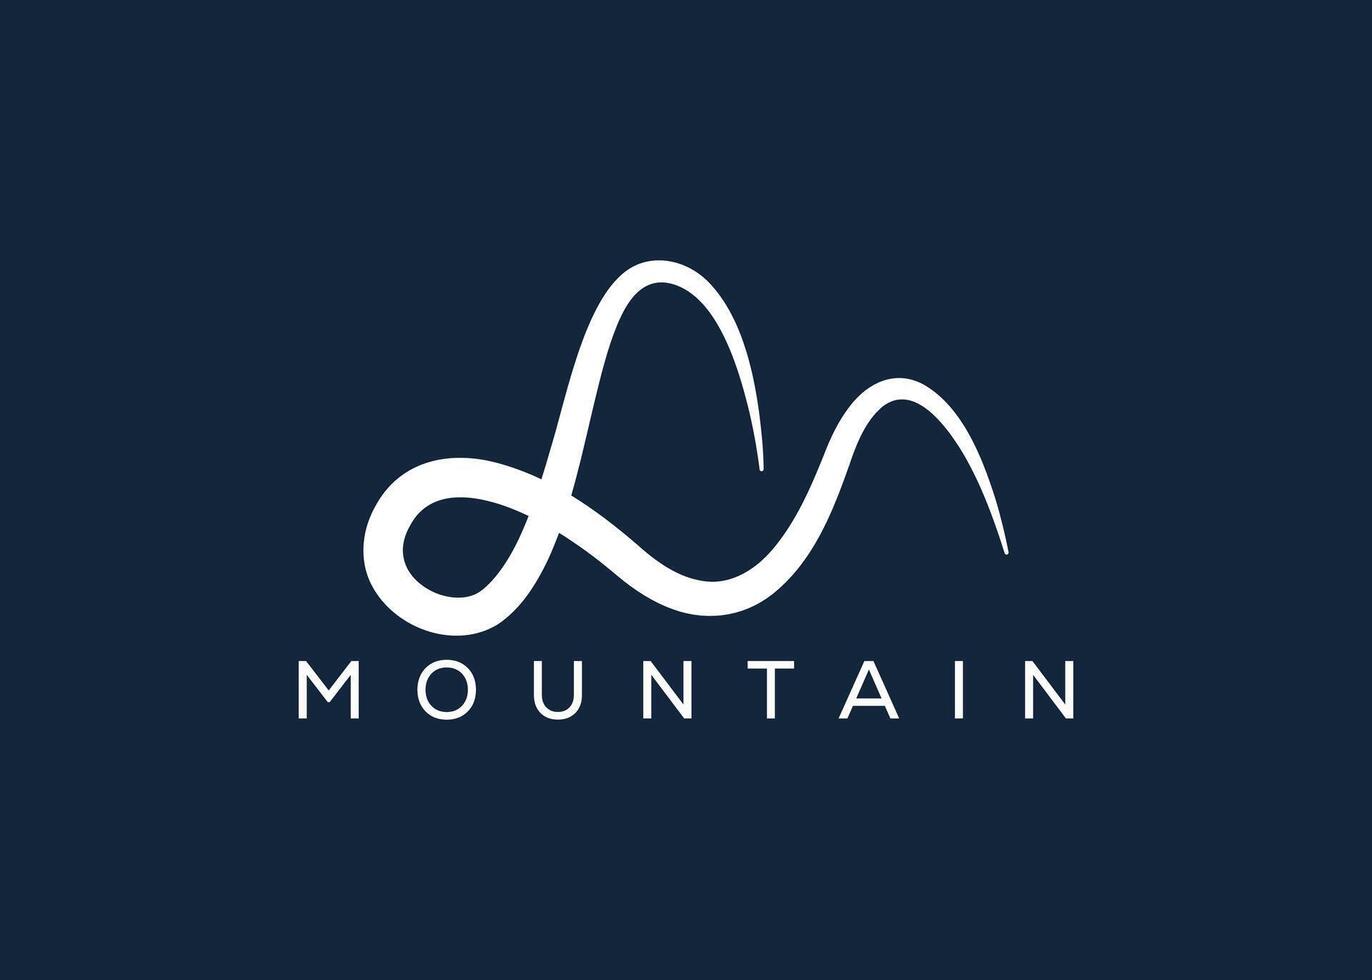 Minimal Mountain logo design vector template. Hill vector logo